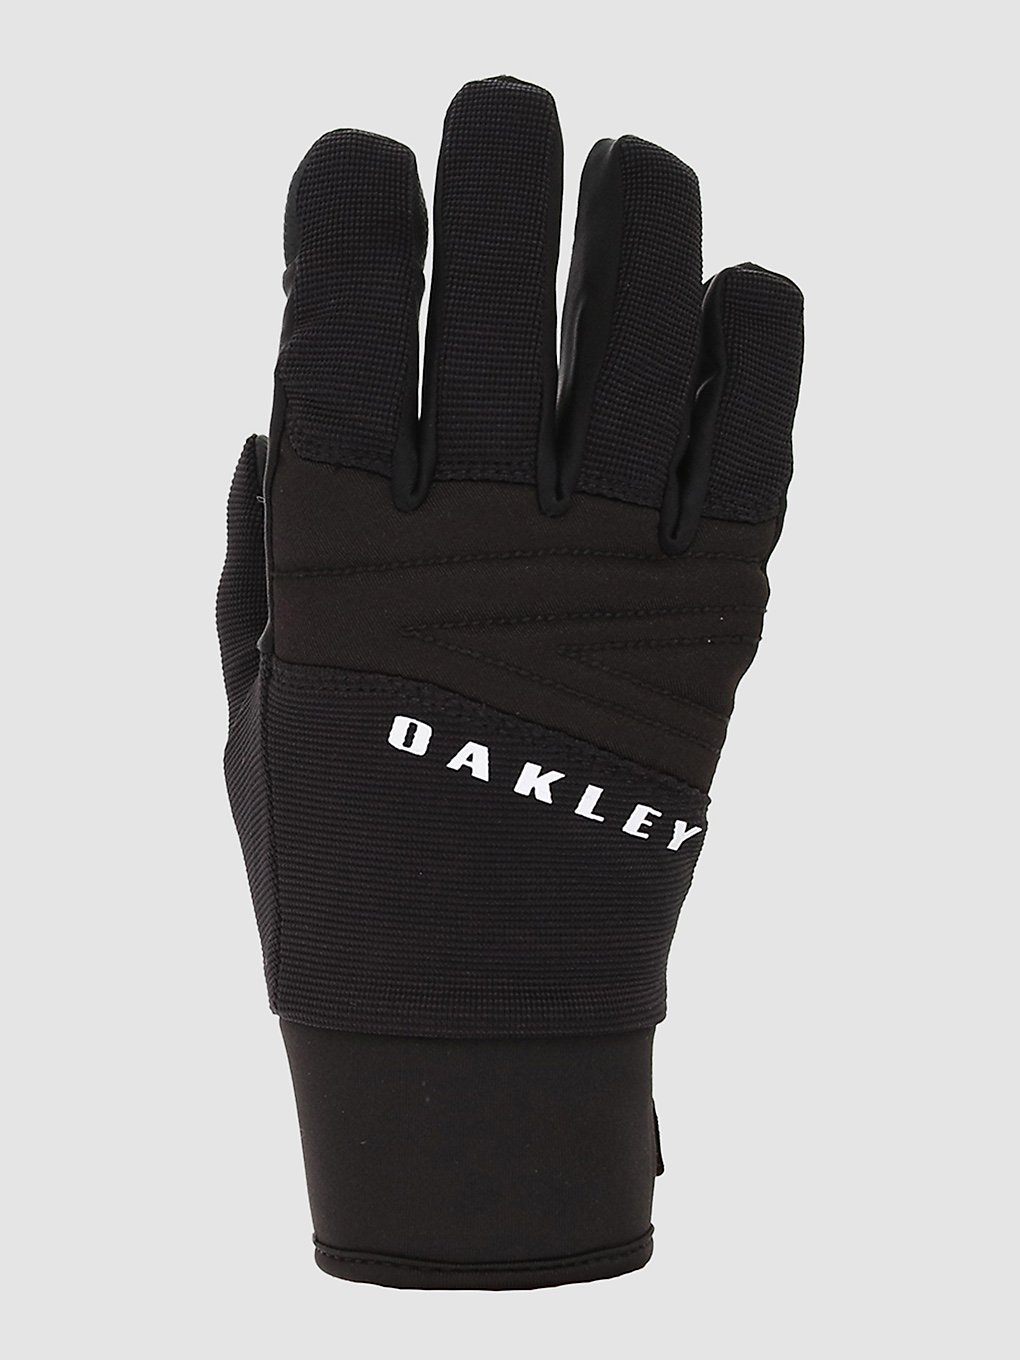 Oakley Factory Ellipse Handschuhe blackout kaufen